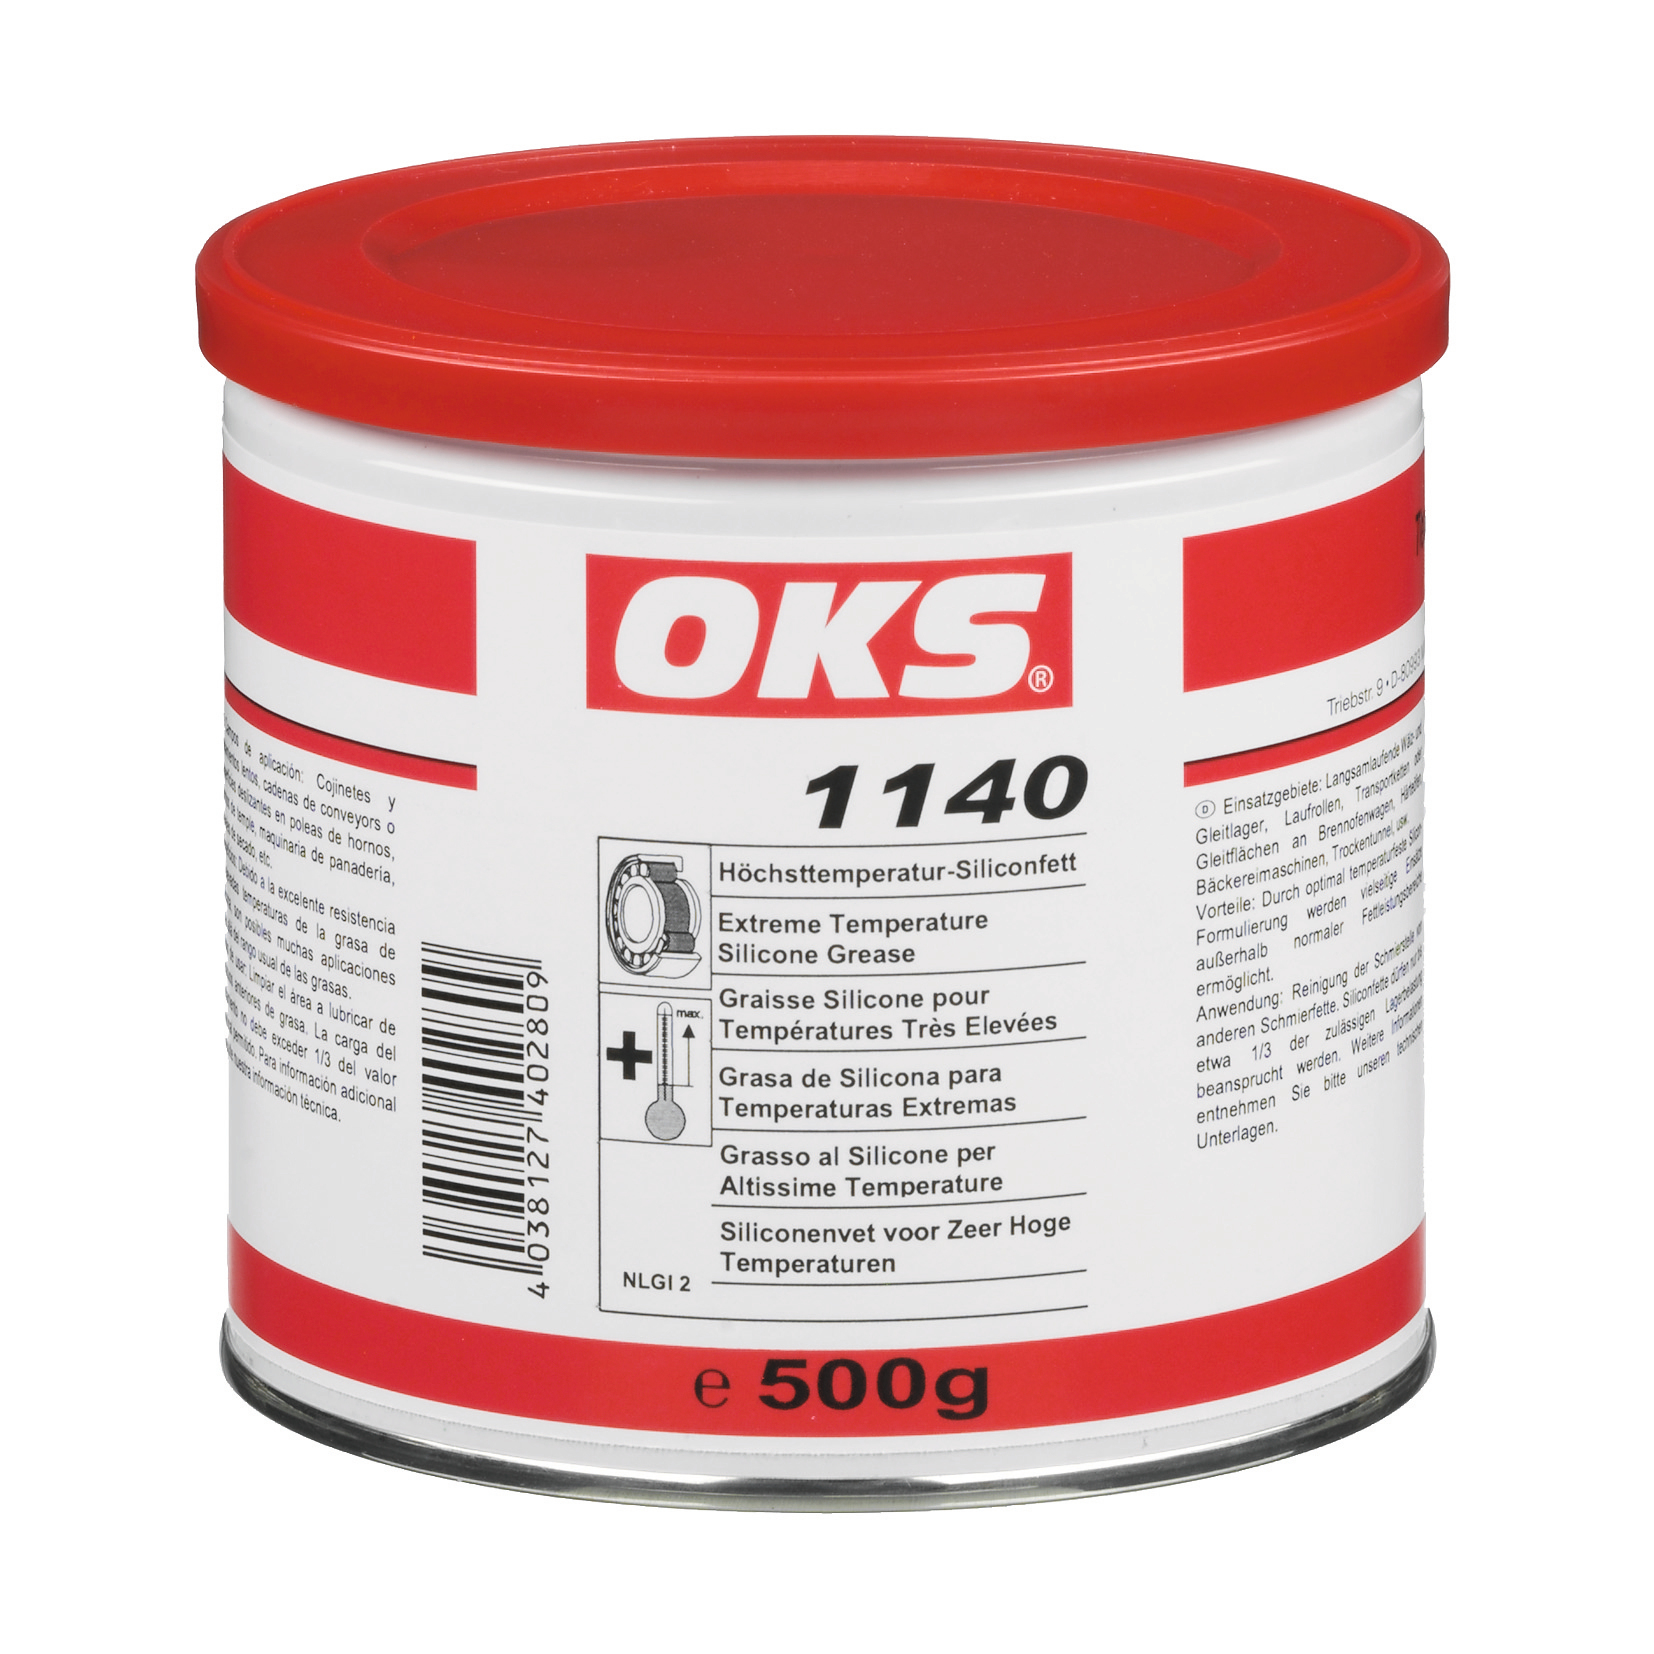 OKS1140-500GR OKS 1140 is een siliconenvet voor zeer hoge temperaturen voor langzaamlopende machinedelen bij extreem hoge temperaturen.